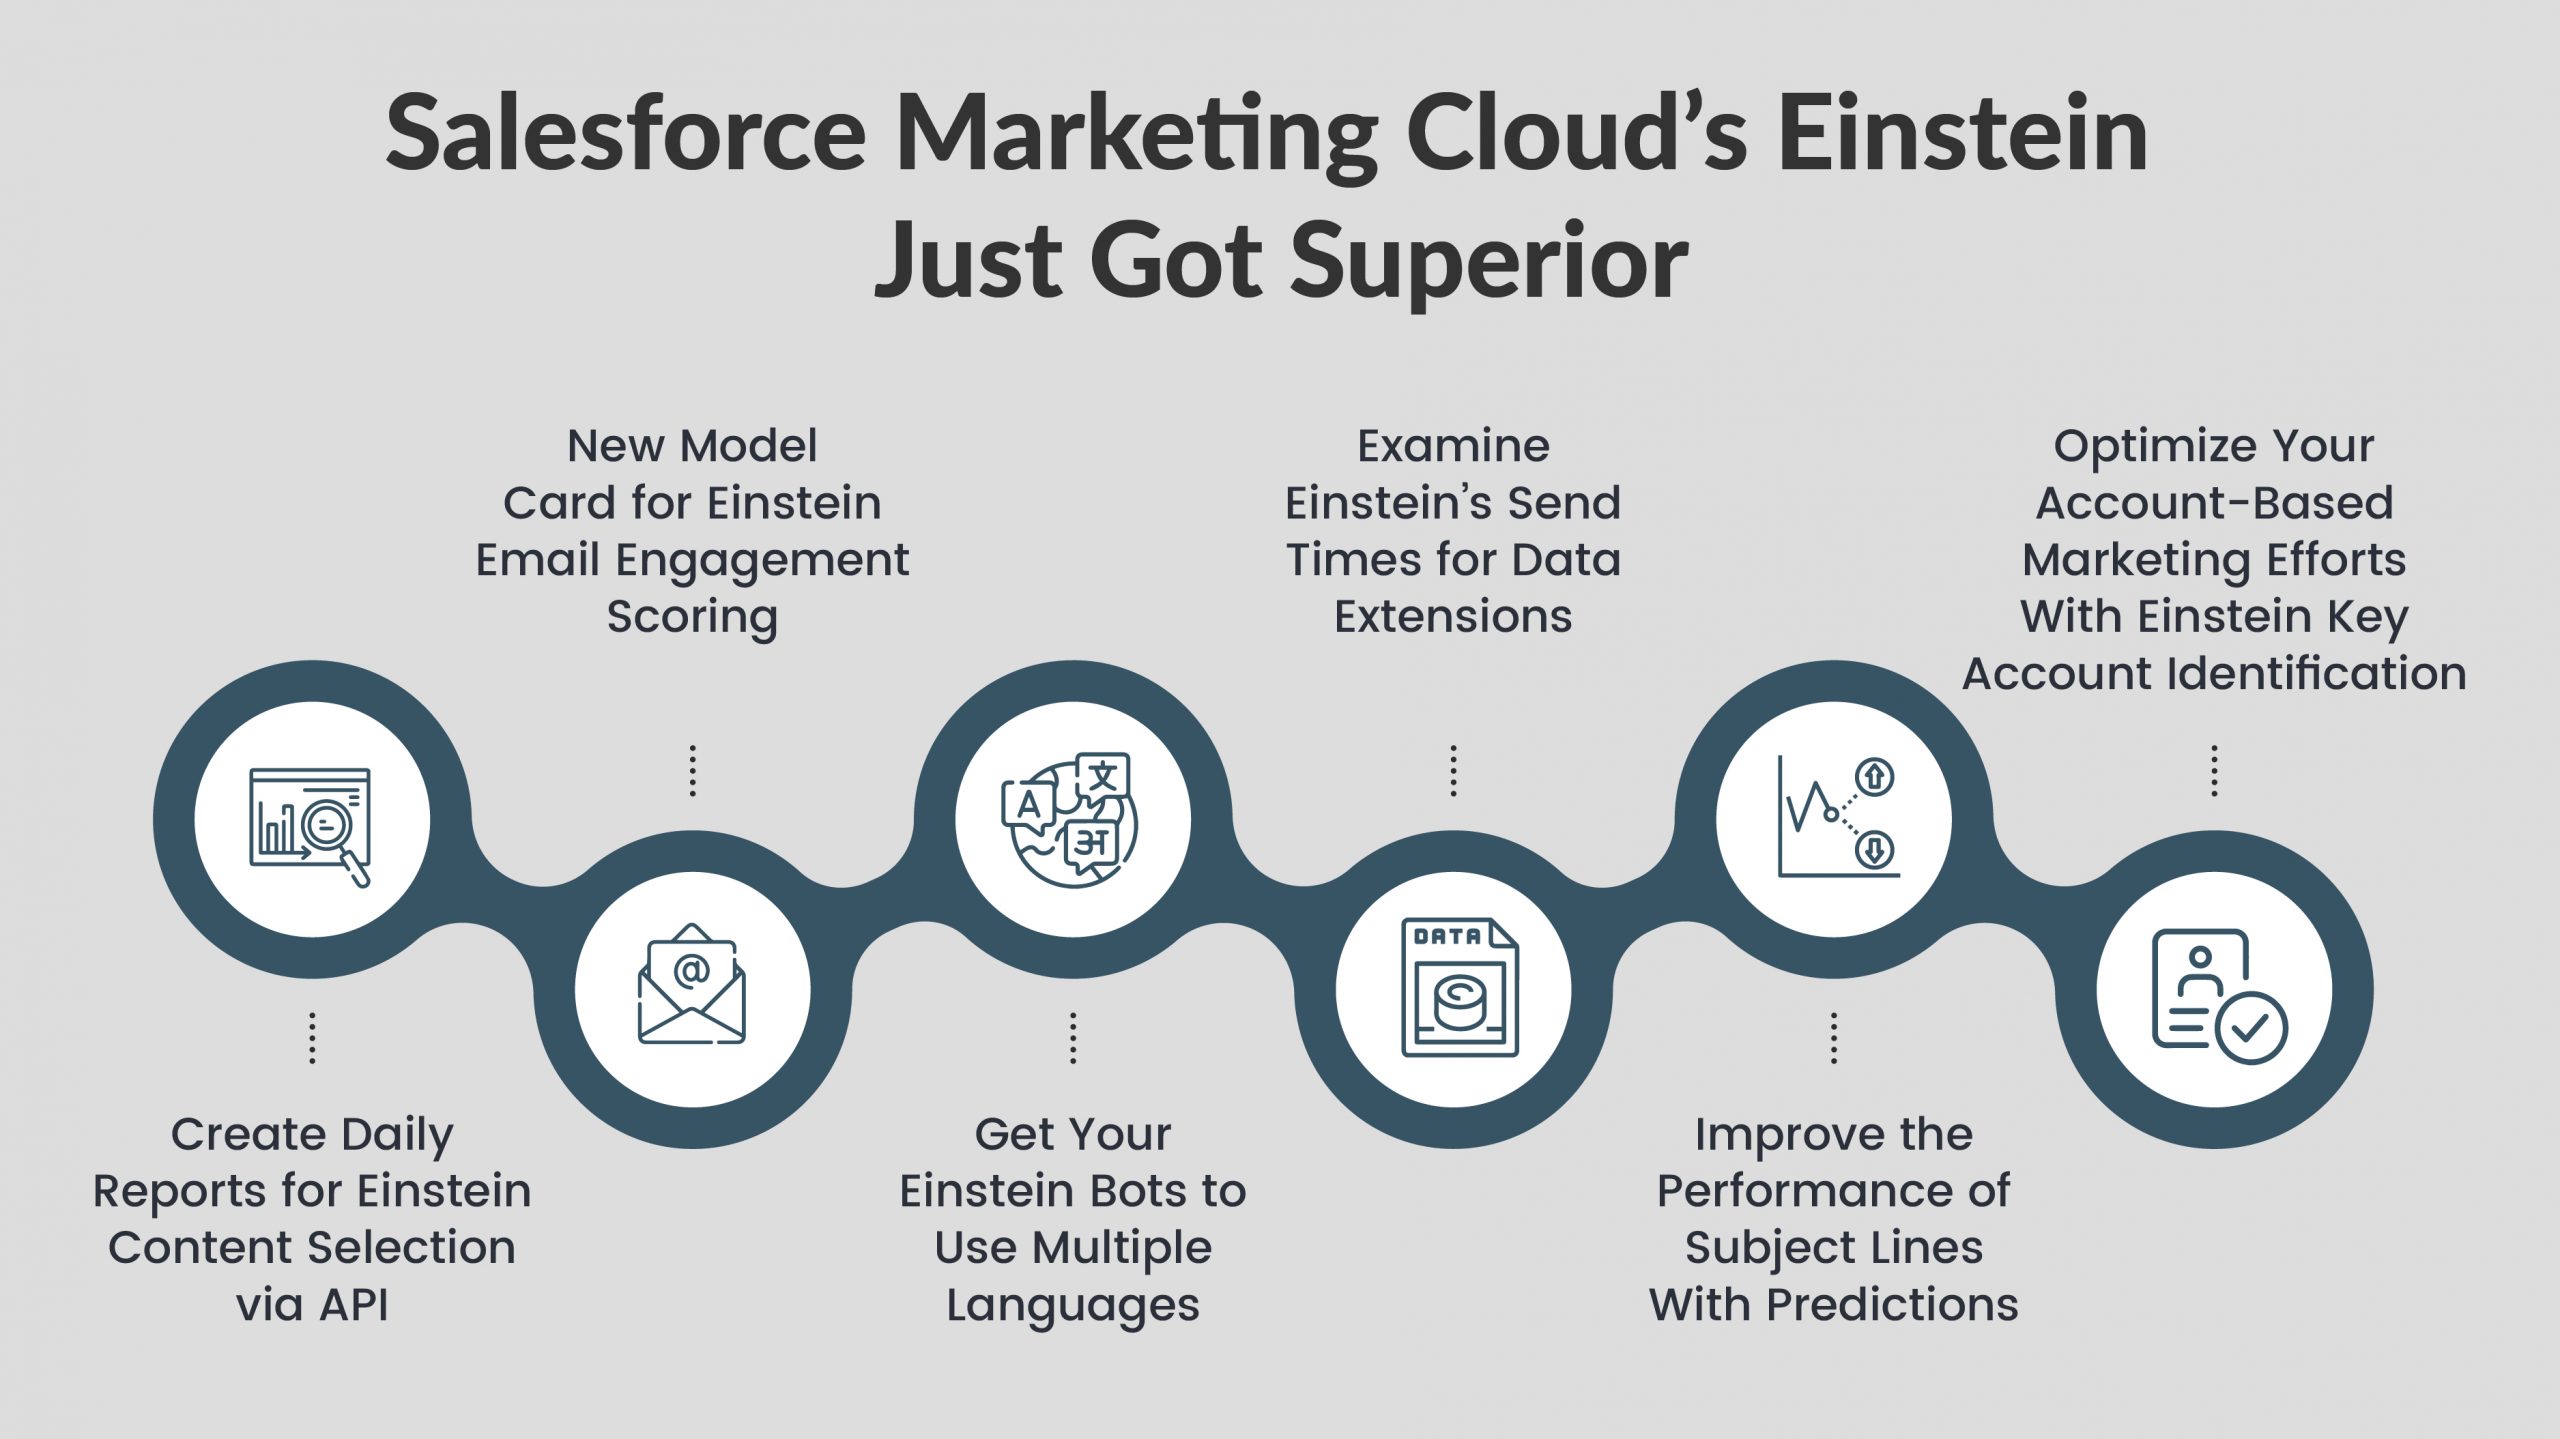 Einstein de Salesforce Marketing Cloud acaba de ser superior